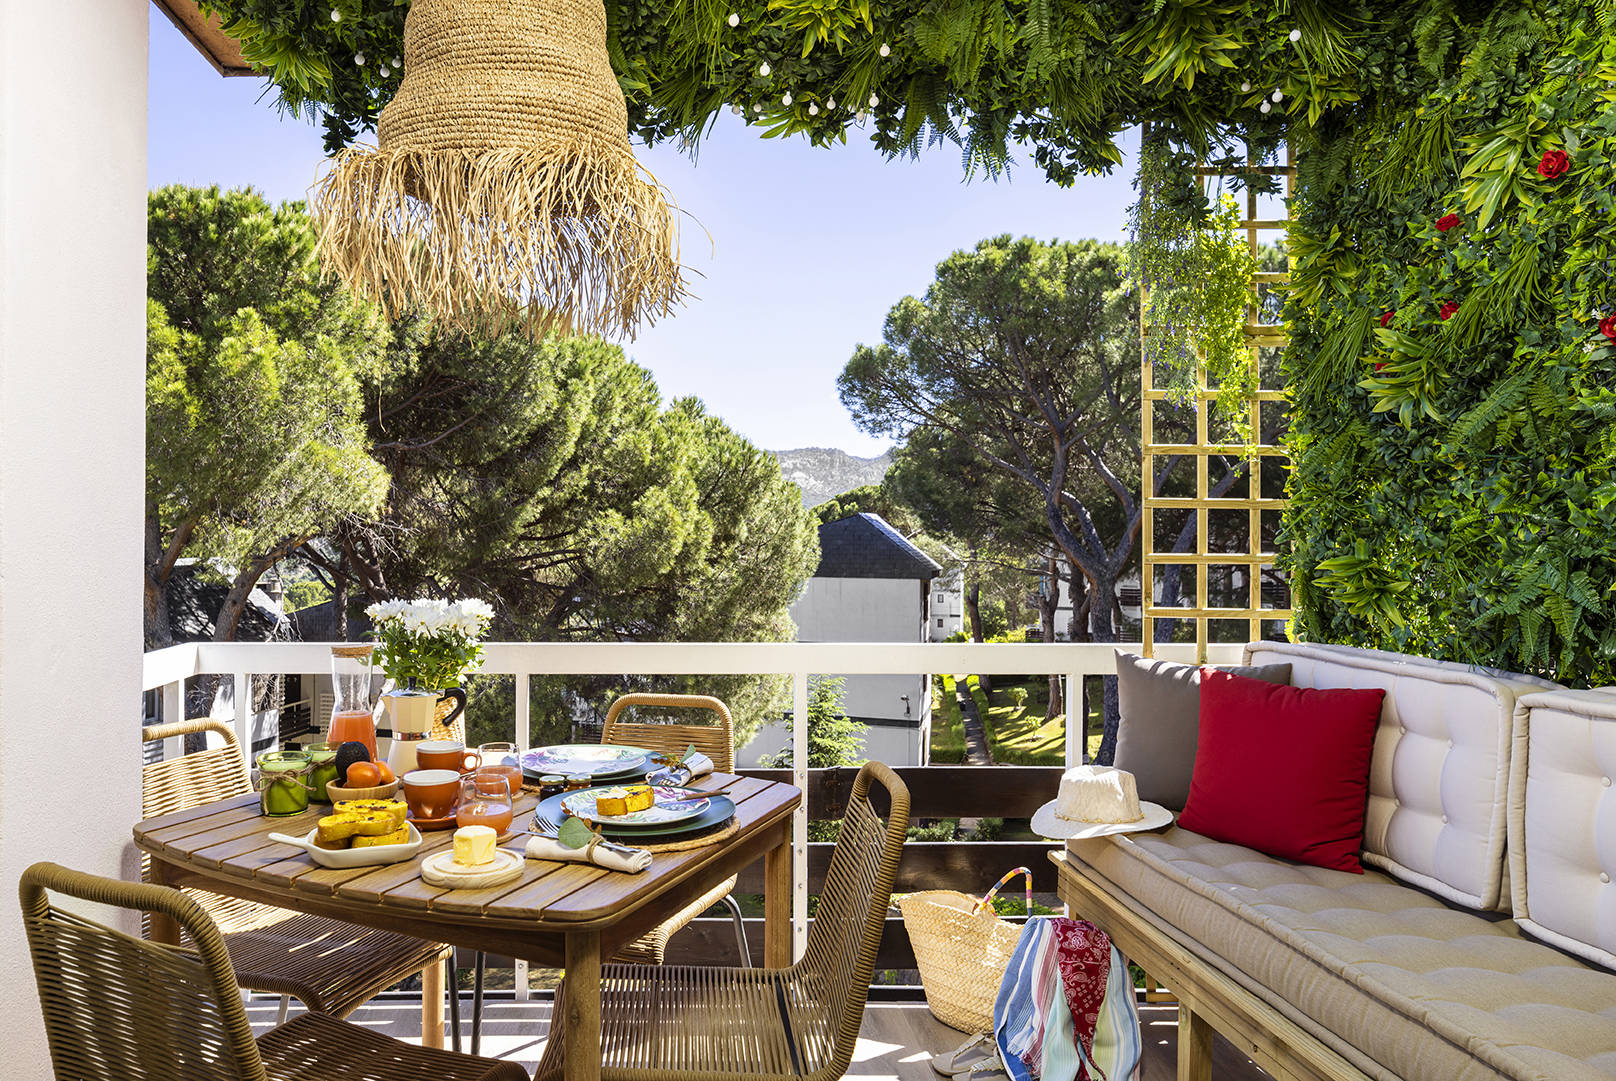 Piso pequeño con terraza con banco, mesa de comedor y jardín vertical por Alberto Torres PortobelloStreet